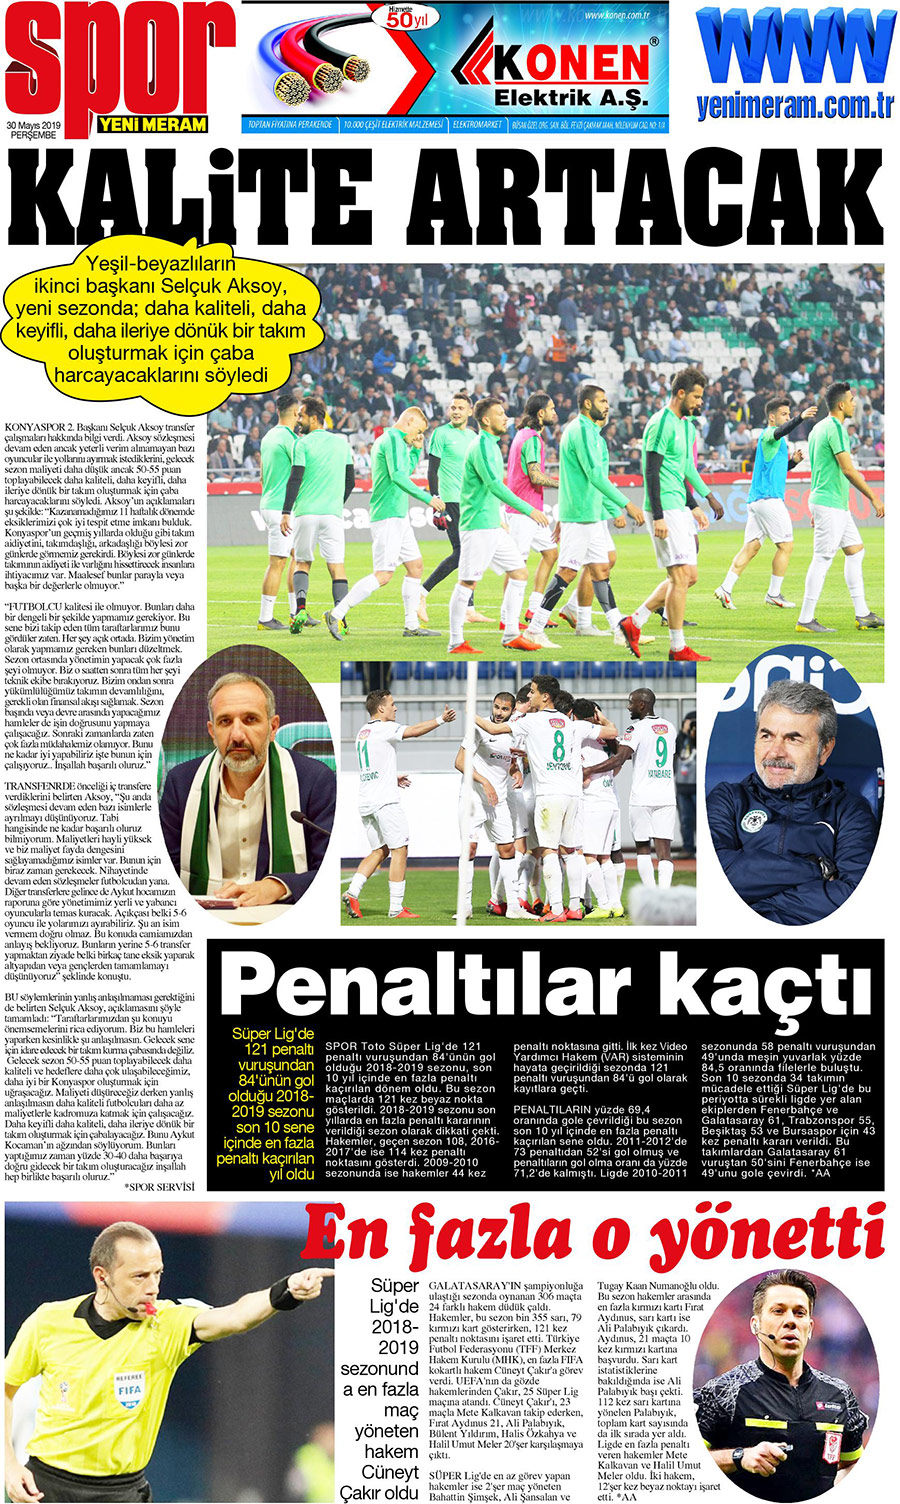 30 Mayıs 2019 Yeni Meram Gazetesi